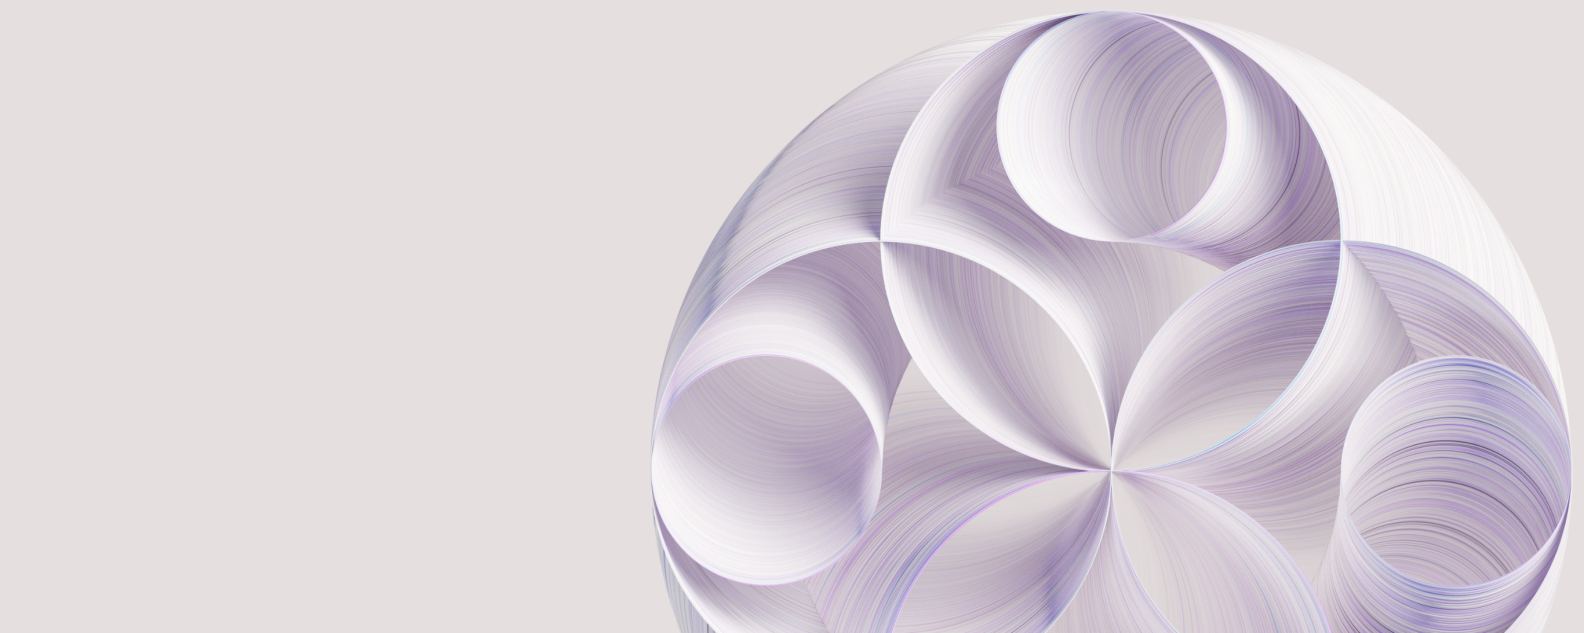 Círculos concéntricos que crean un diseño abstracto